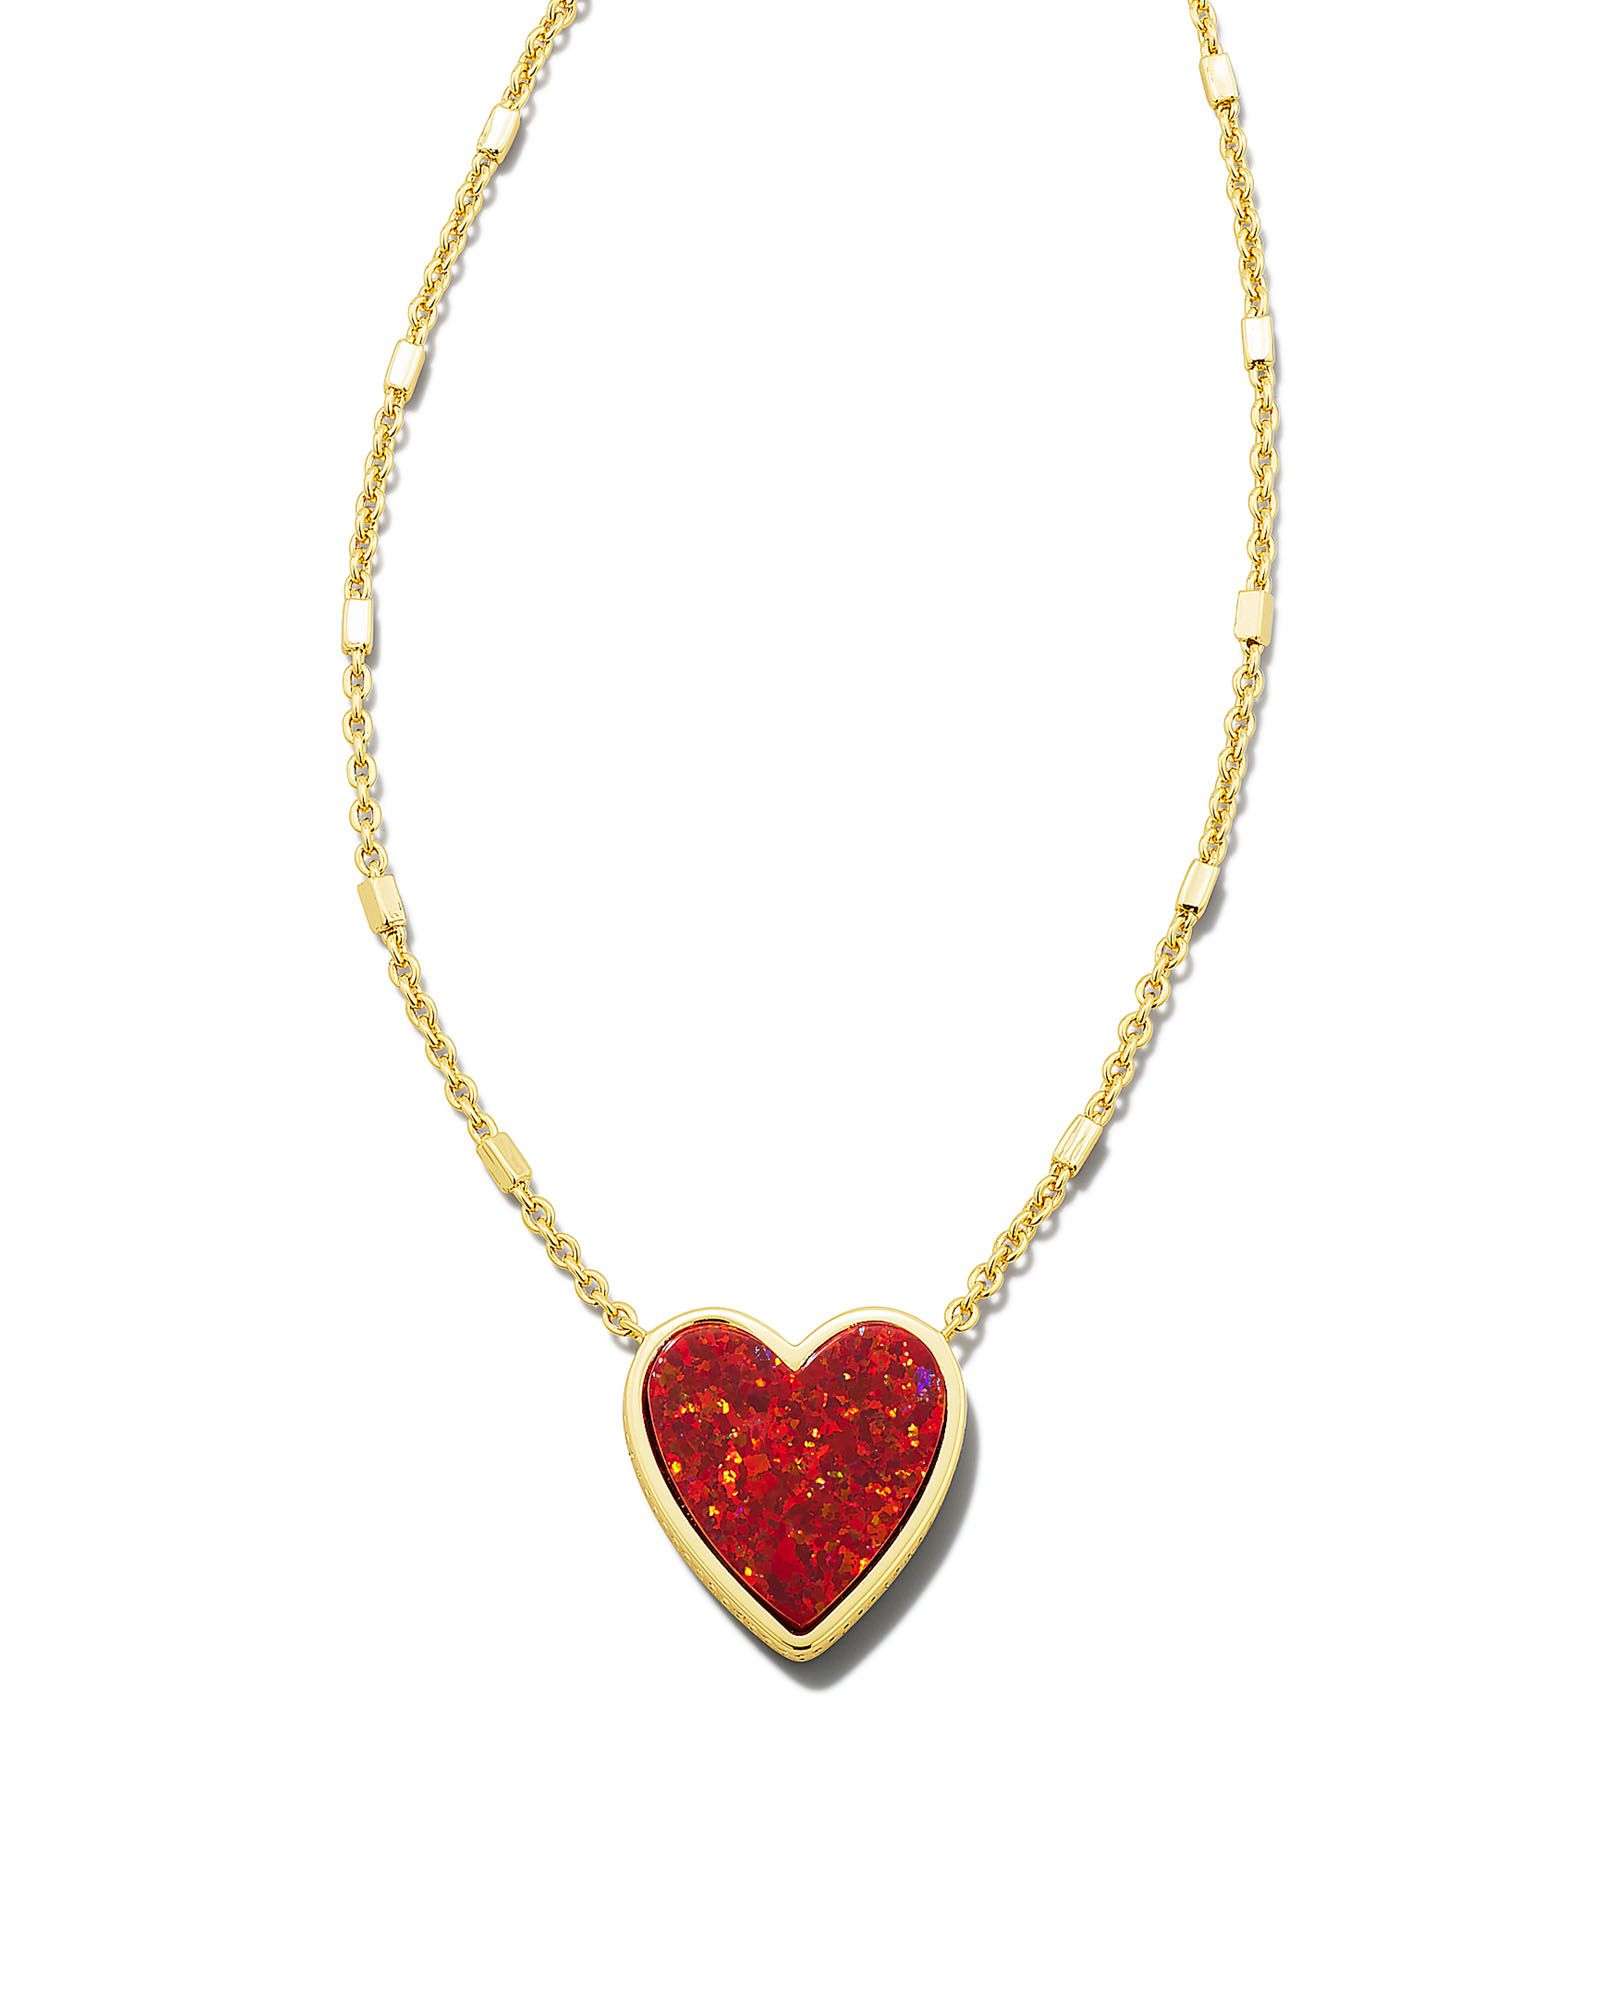 Heart Gold Pendant Necklace in Red Kyocera Opal | Kendra Scott | Kendra Scott